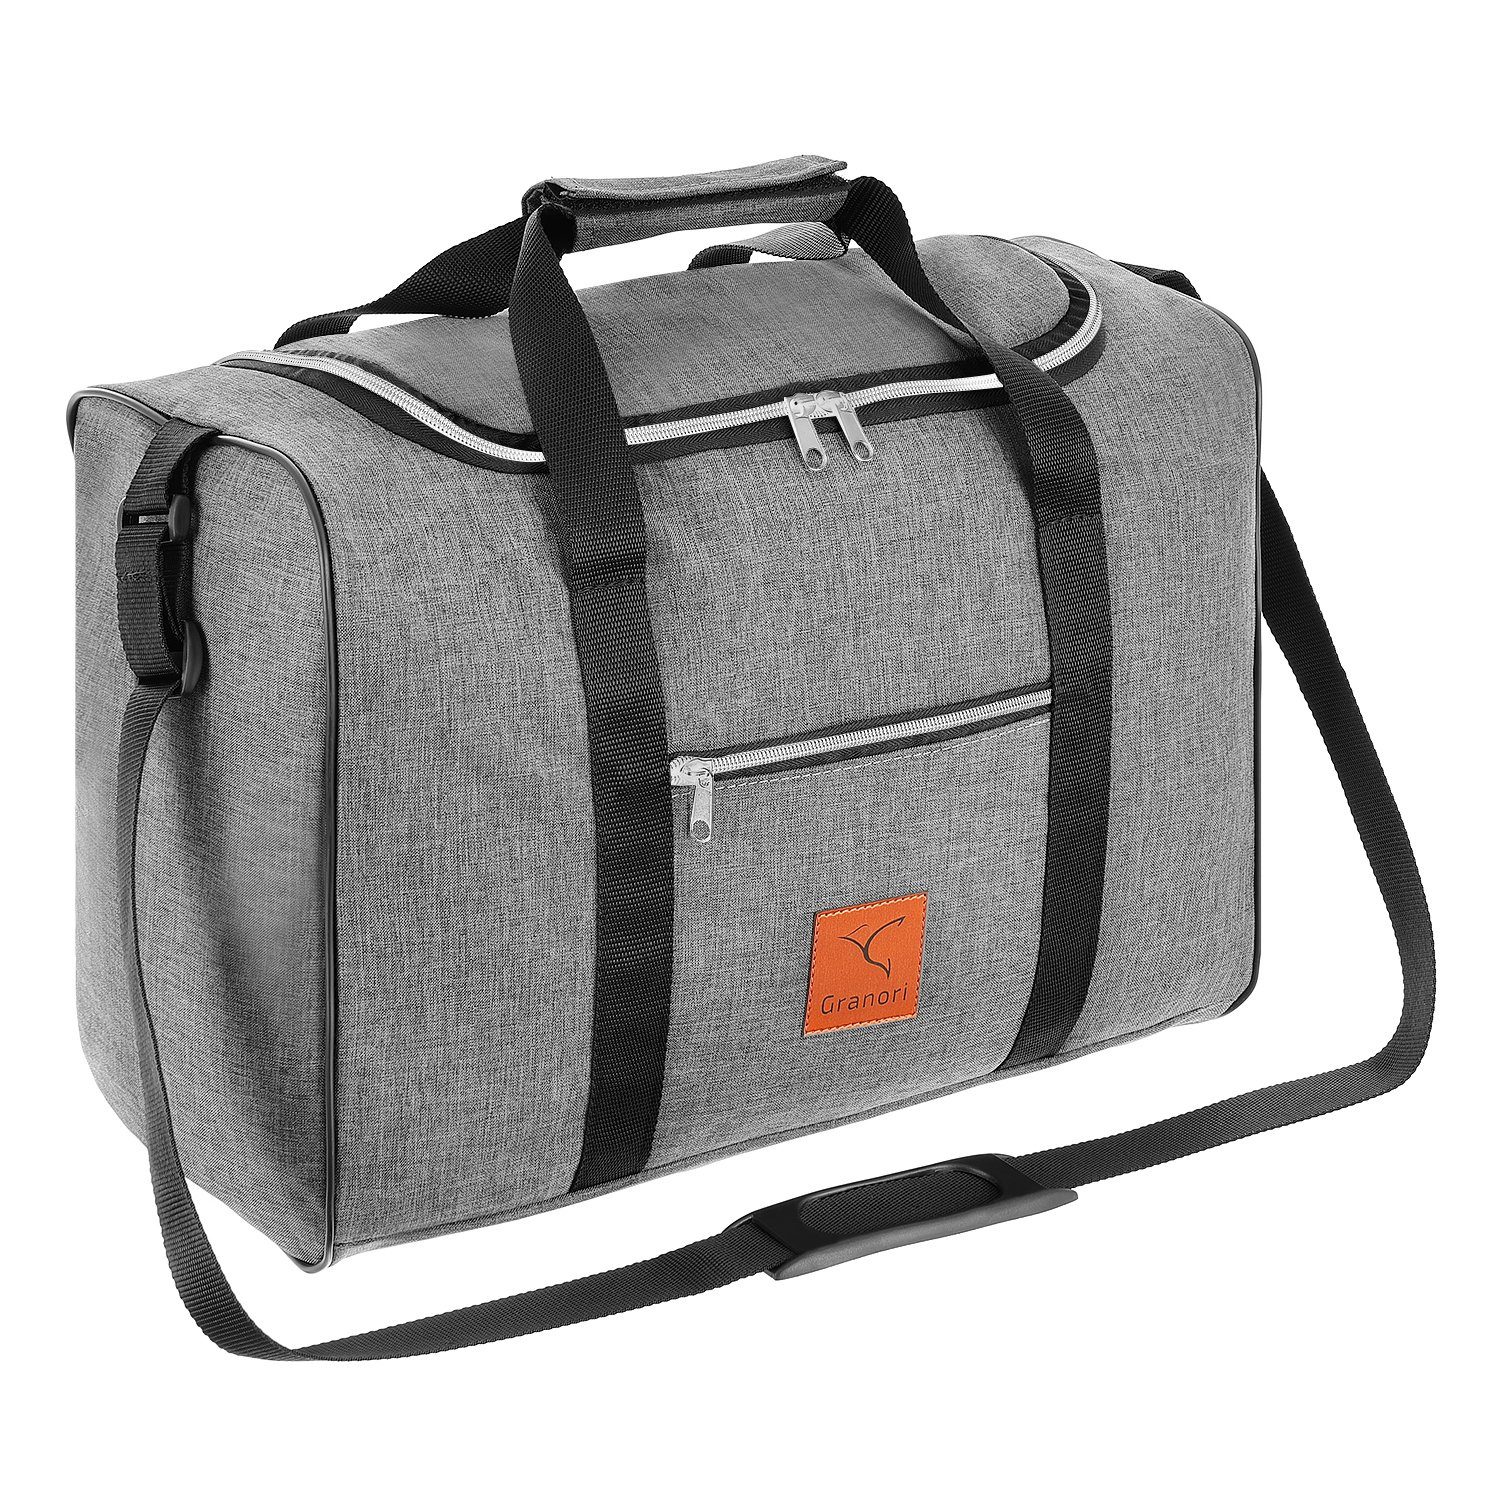 Granori Reisetasche 40x30x20 cm Handgepäck für Flüge mit z. B. Wizz Air (Modell WT2), extra leicht, mit abschließbarem Fach und verstellbarem Schultergurt Grau